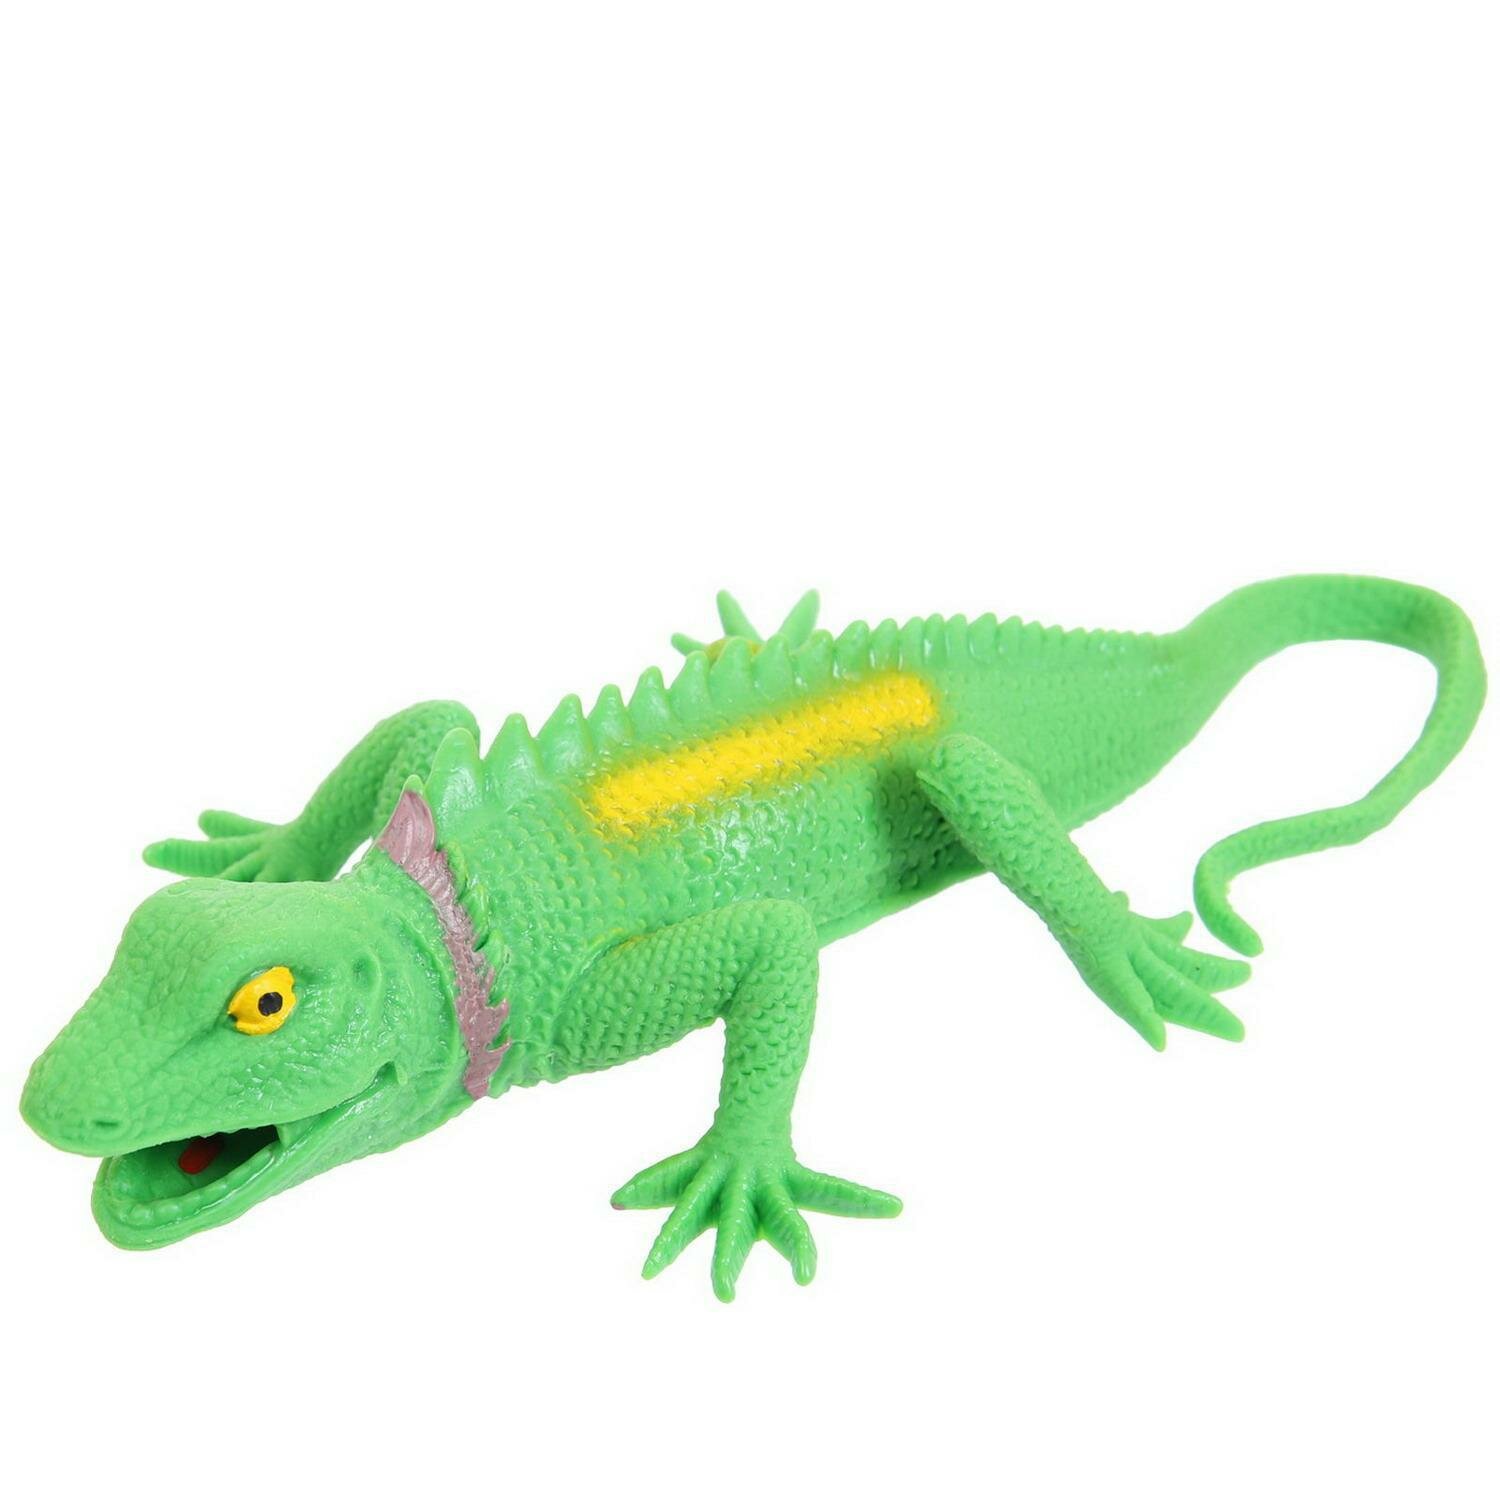 Фигурка Abtoys Юный натуралист: Рептилии, Ящерица ярко-зеленая с шипами на спине и воротнике